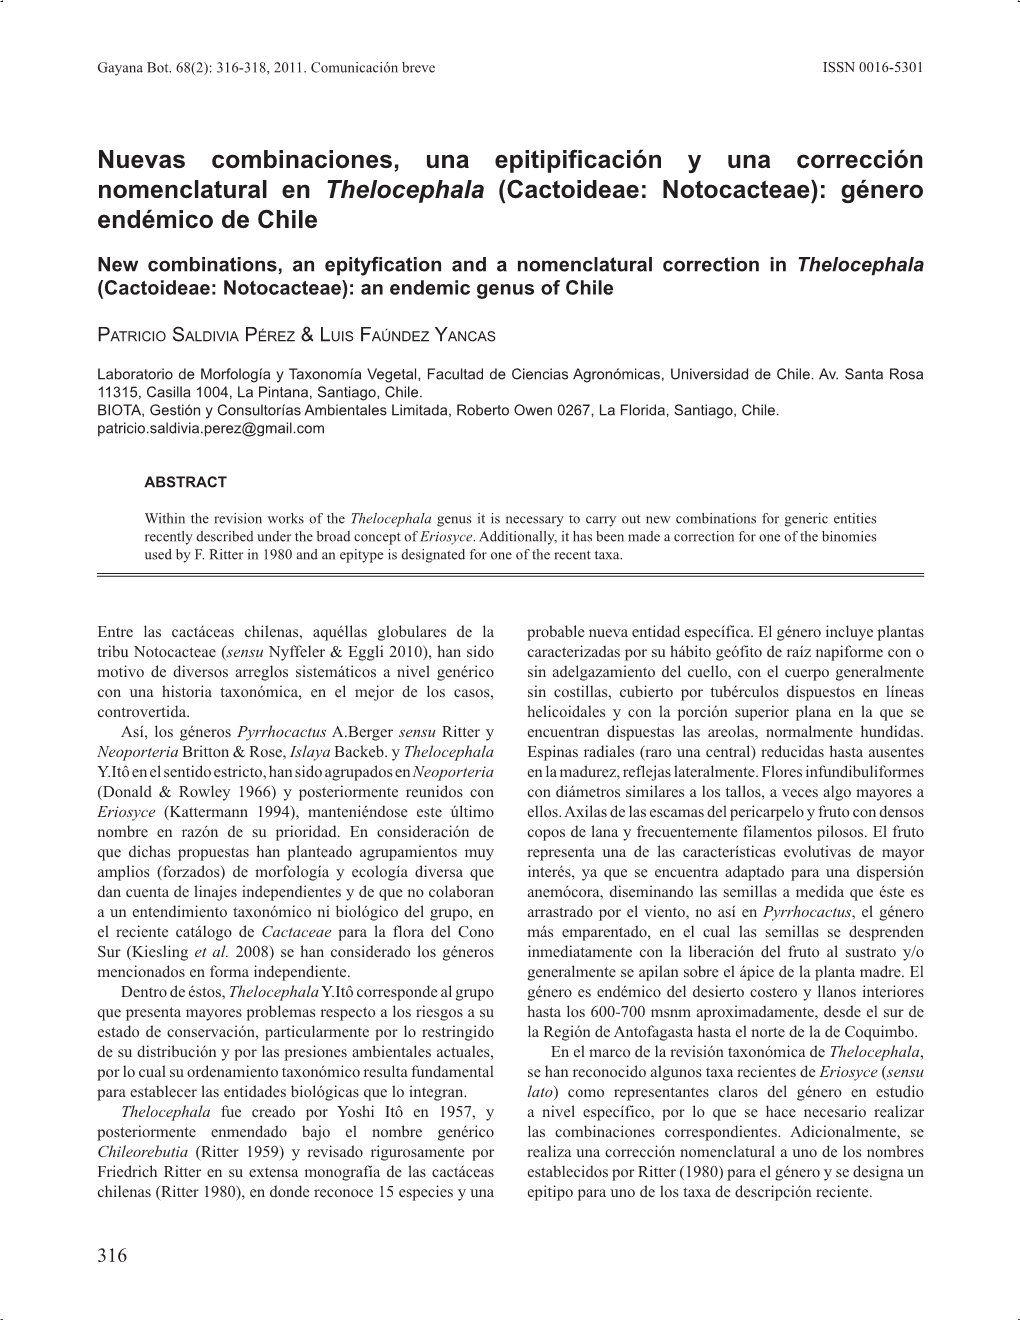 Nuevas Combinaciones, Una Epitipificación Y Una Corrección Nomenclatural En Thelocephala (Cactoideae: Notocacteae): Género Endémico De Chile